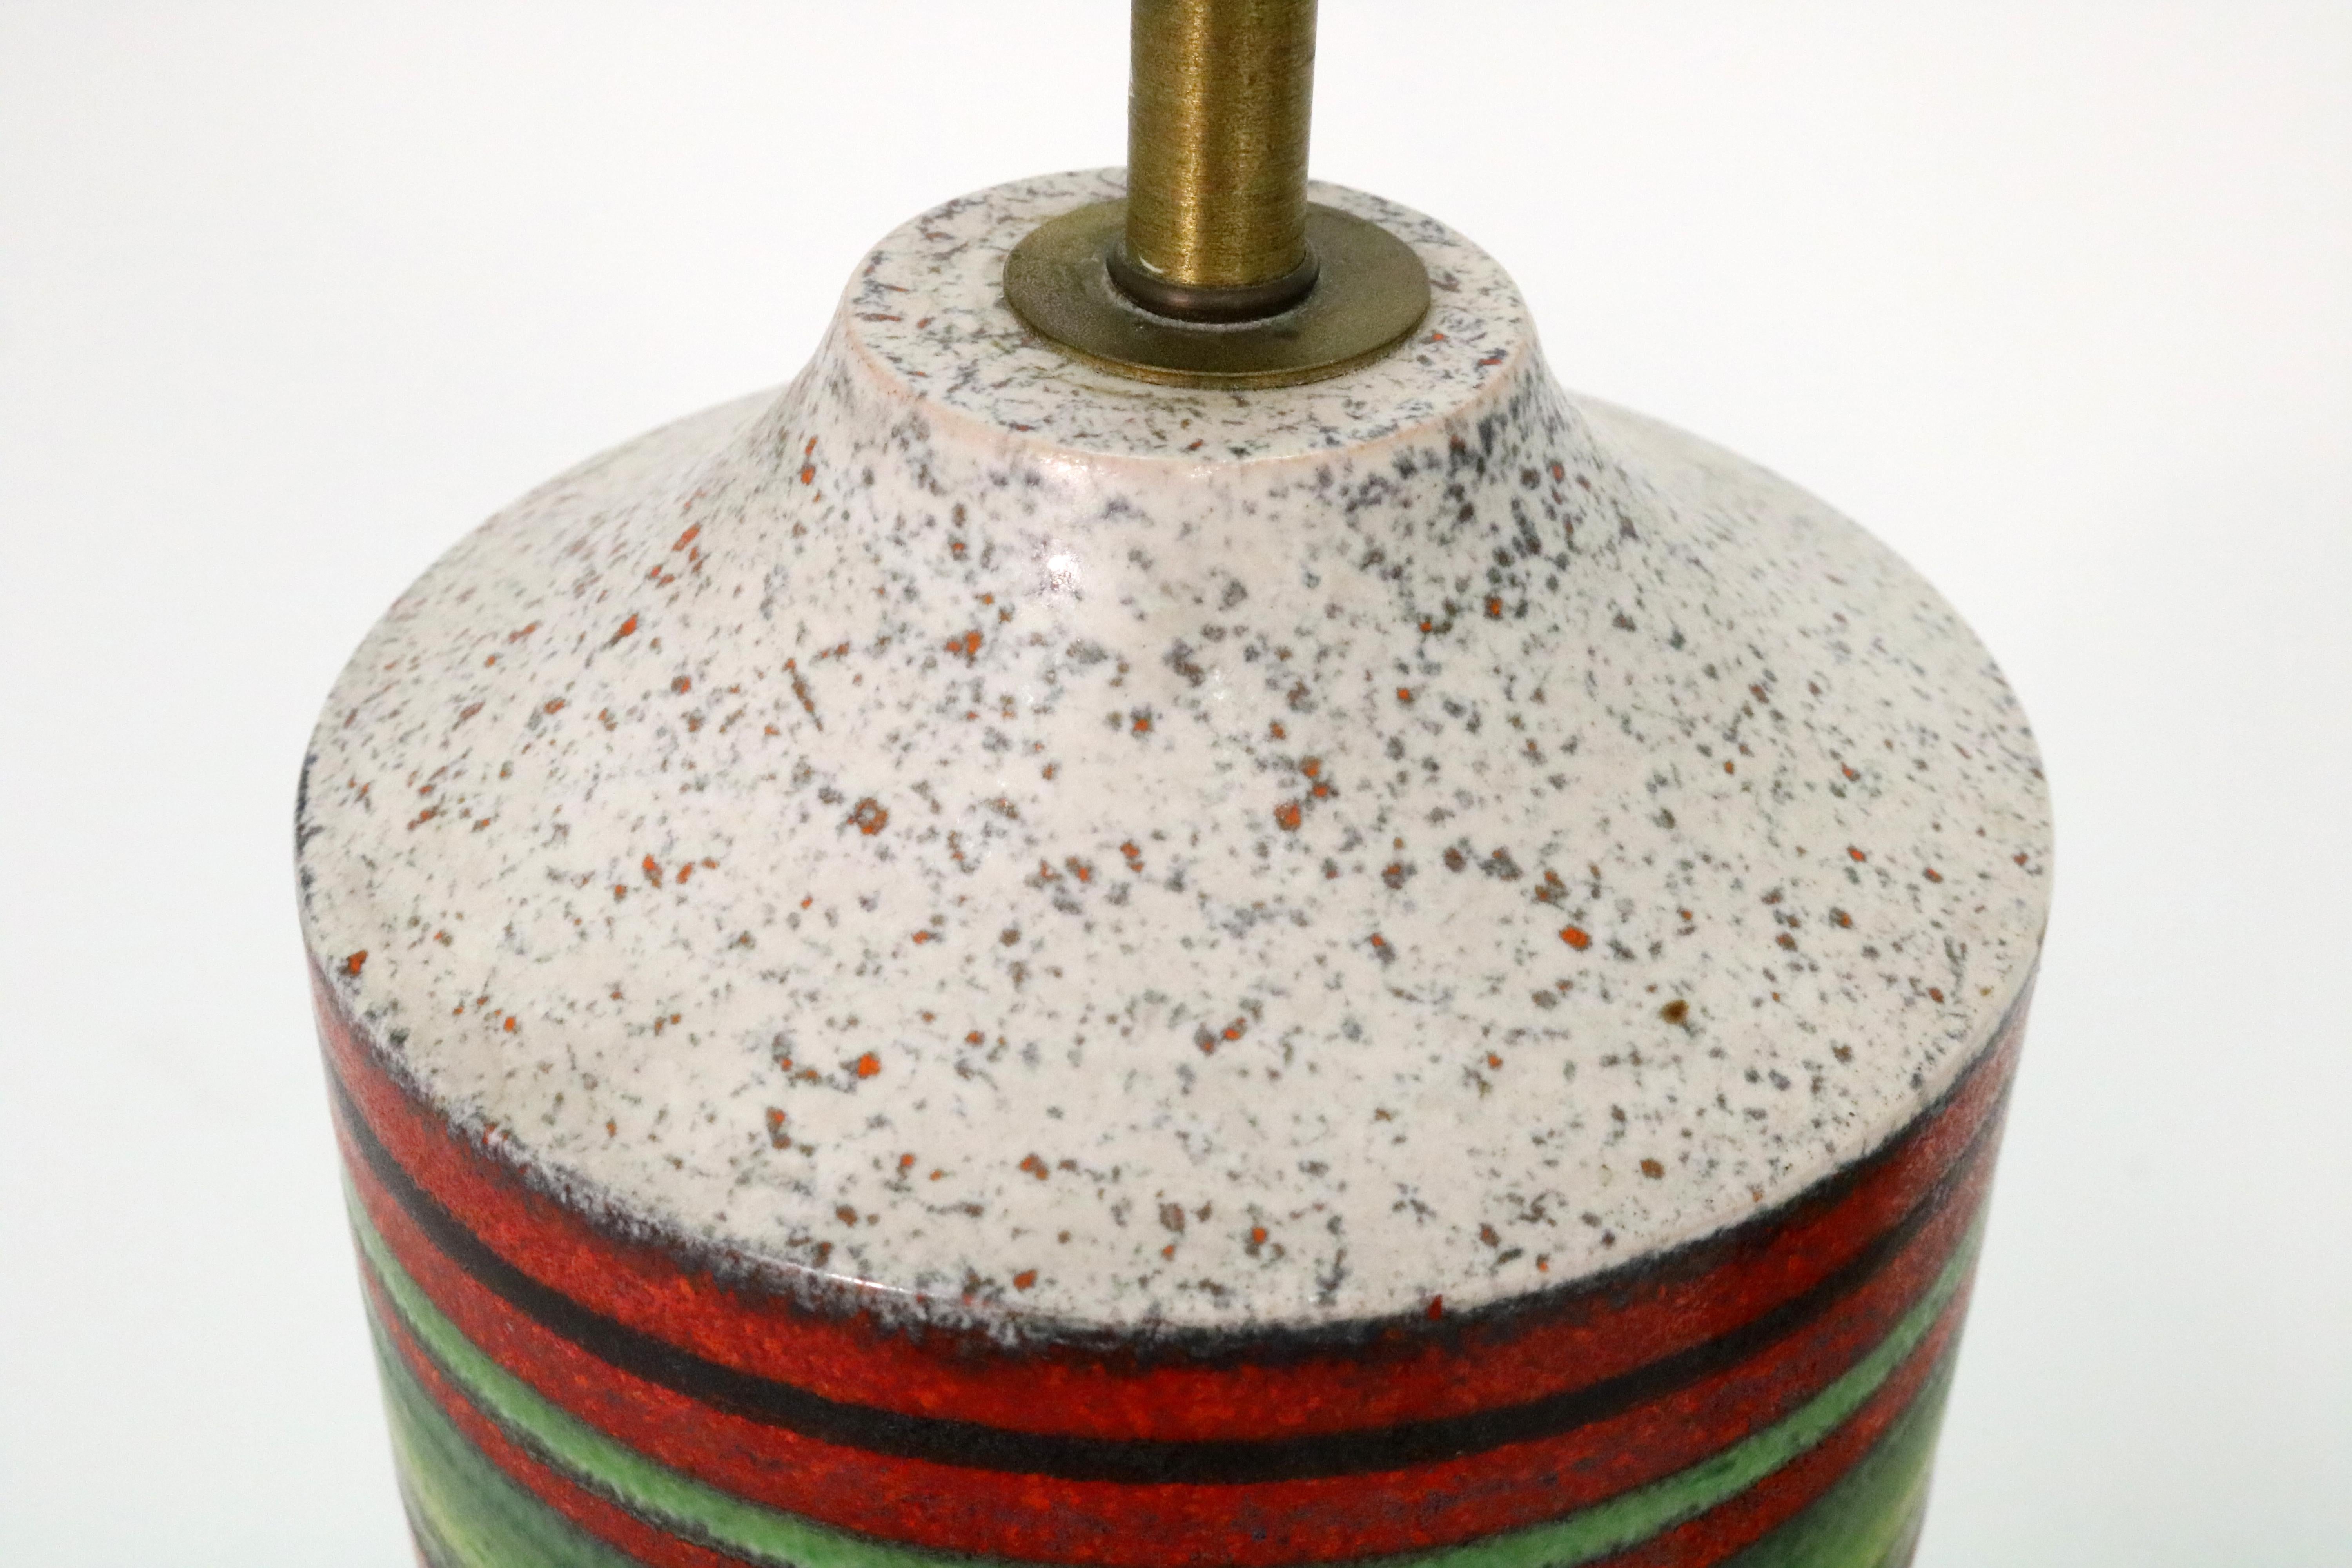 Mid-20th Century Alvino Bagni Lamps for Bagni Ceramiche, Italy 1960s For Sale